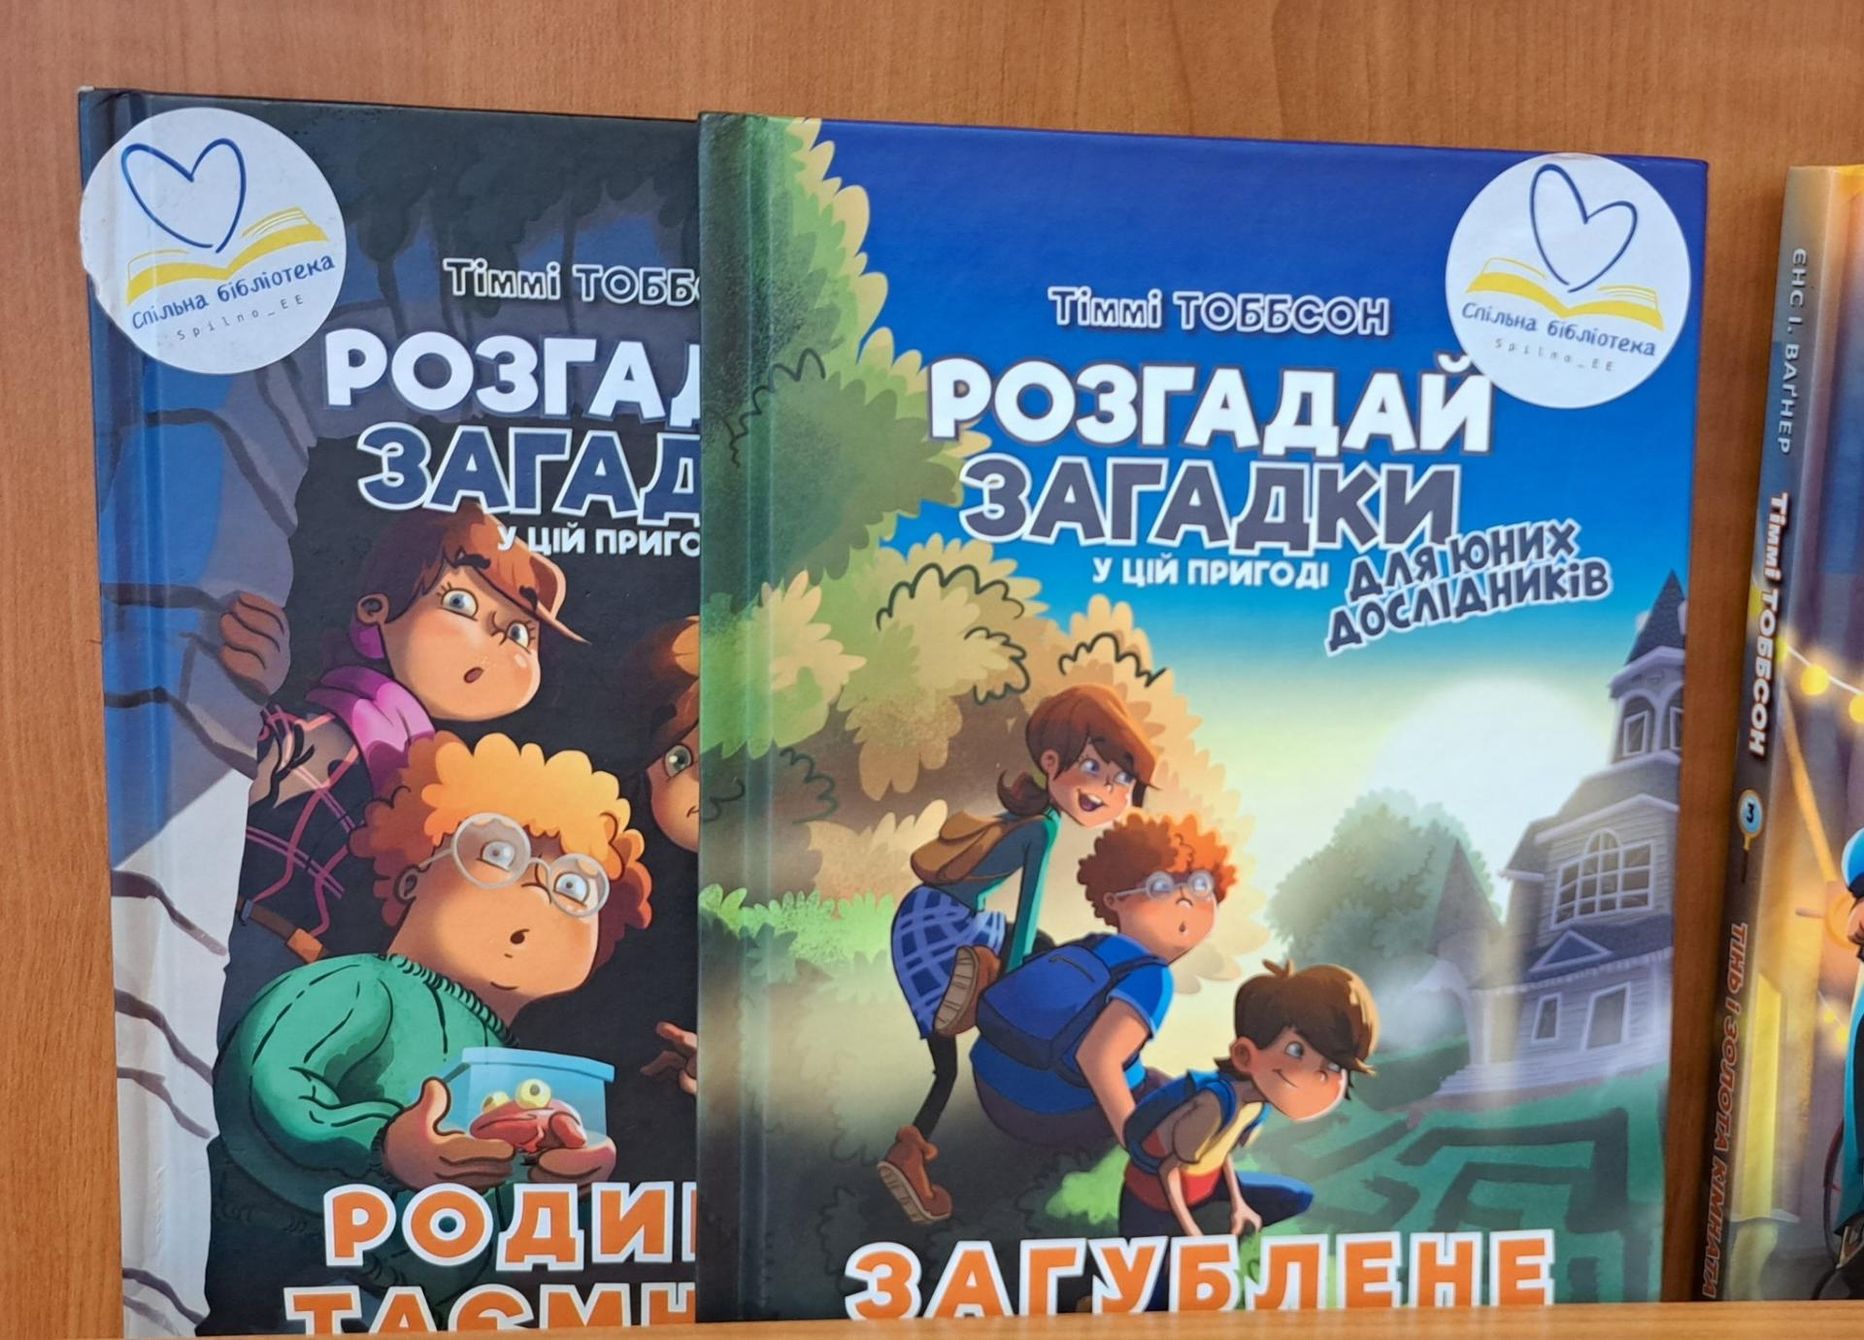 Raamatukogu riiulist leiab kena valiku ukrainakeelset lastekirjandust.